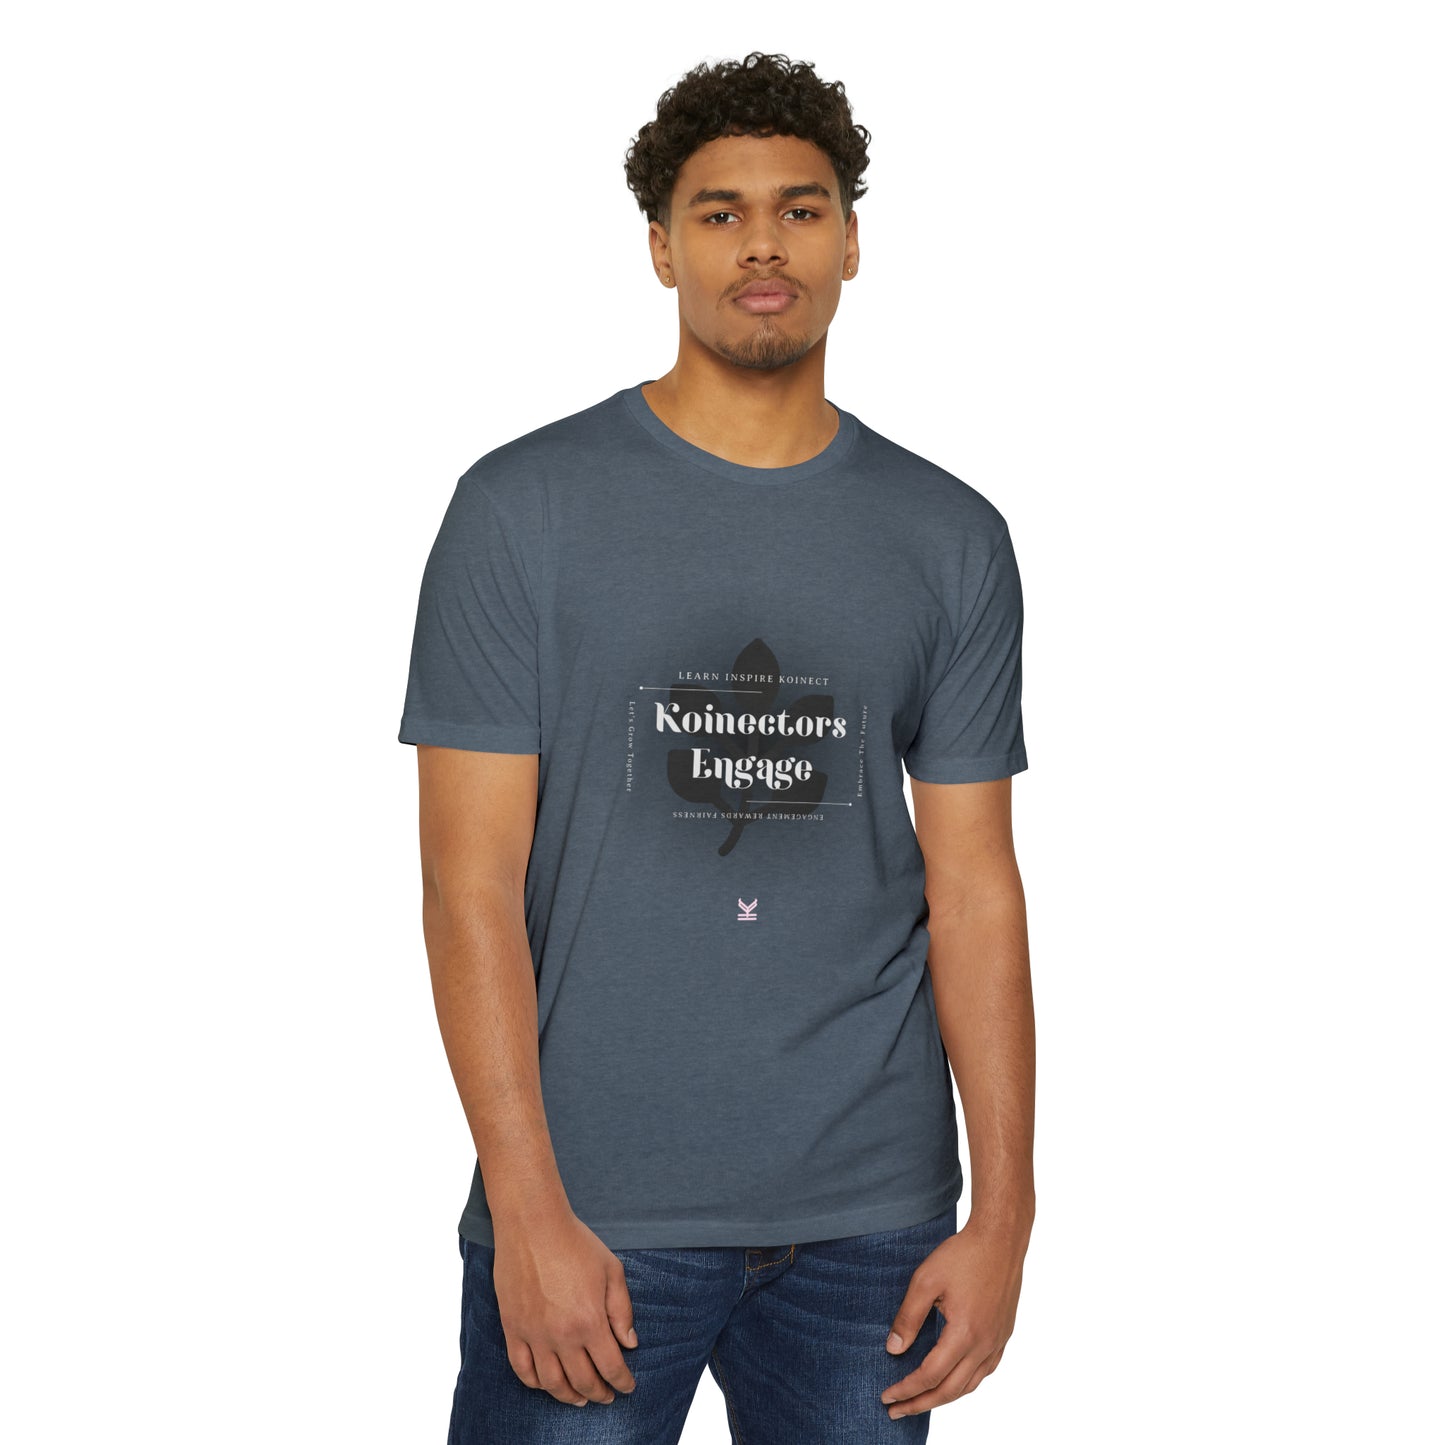 #Koinectors Engage T-shirt